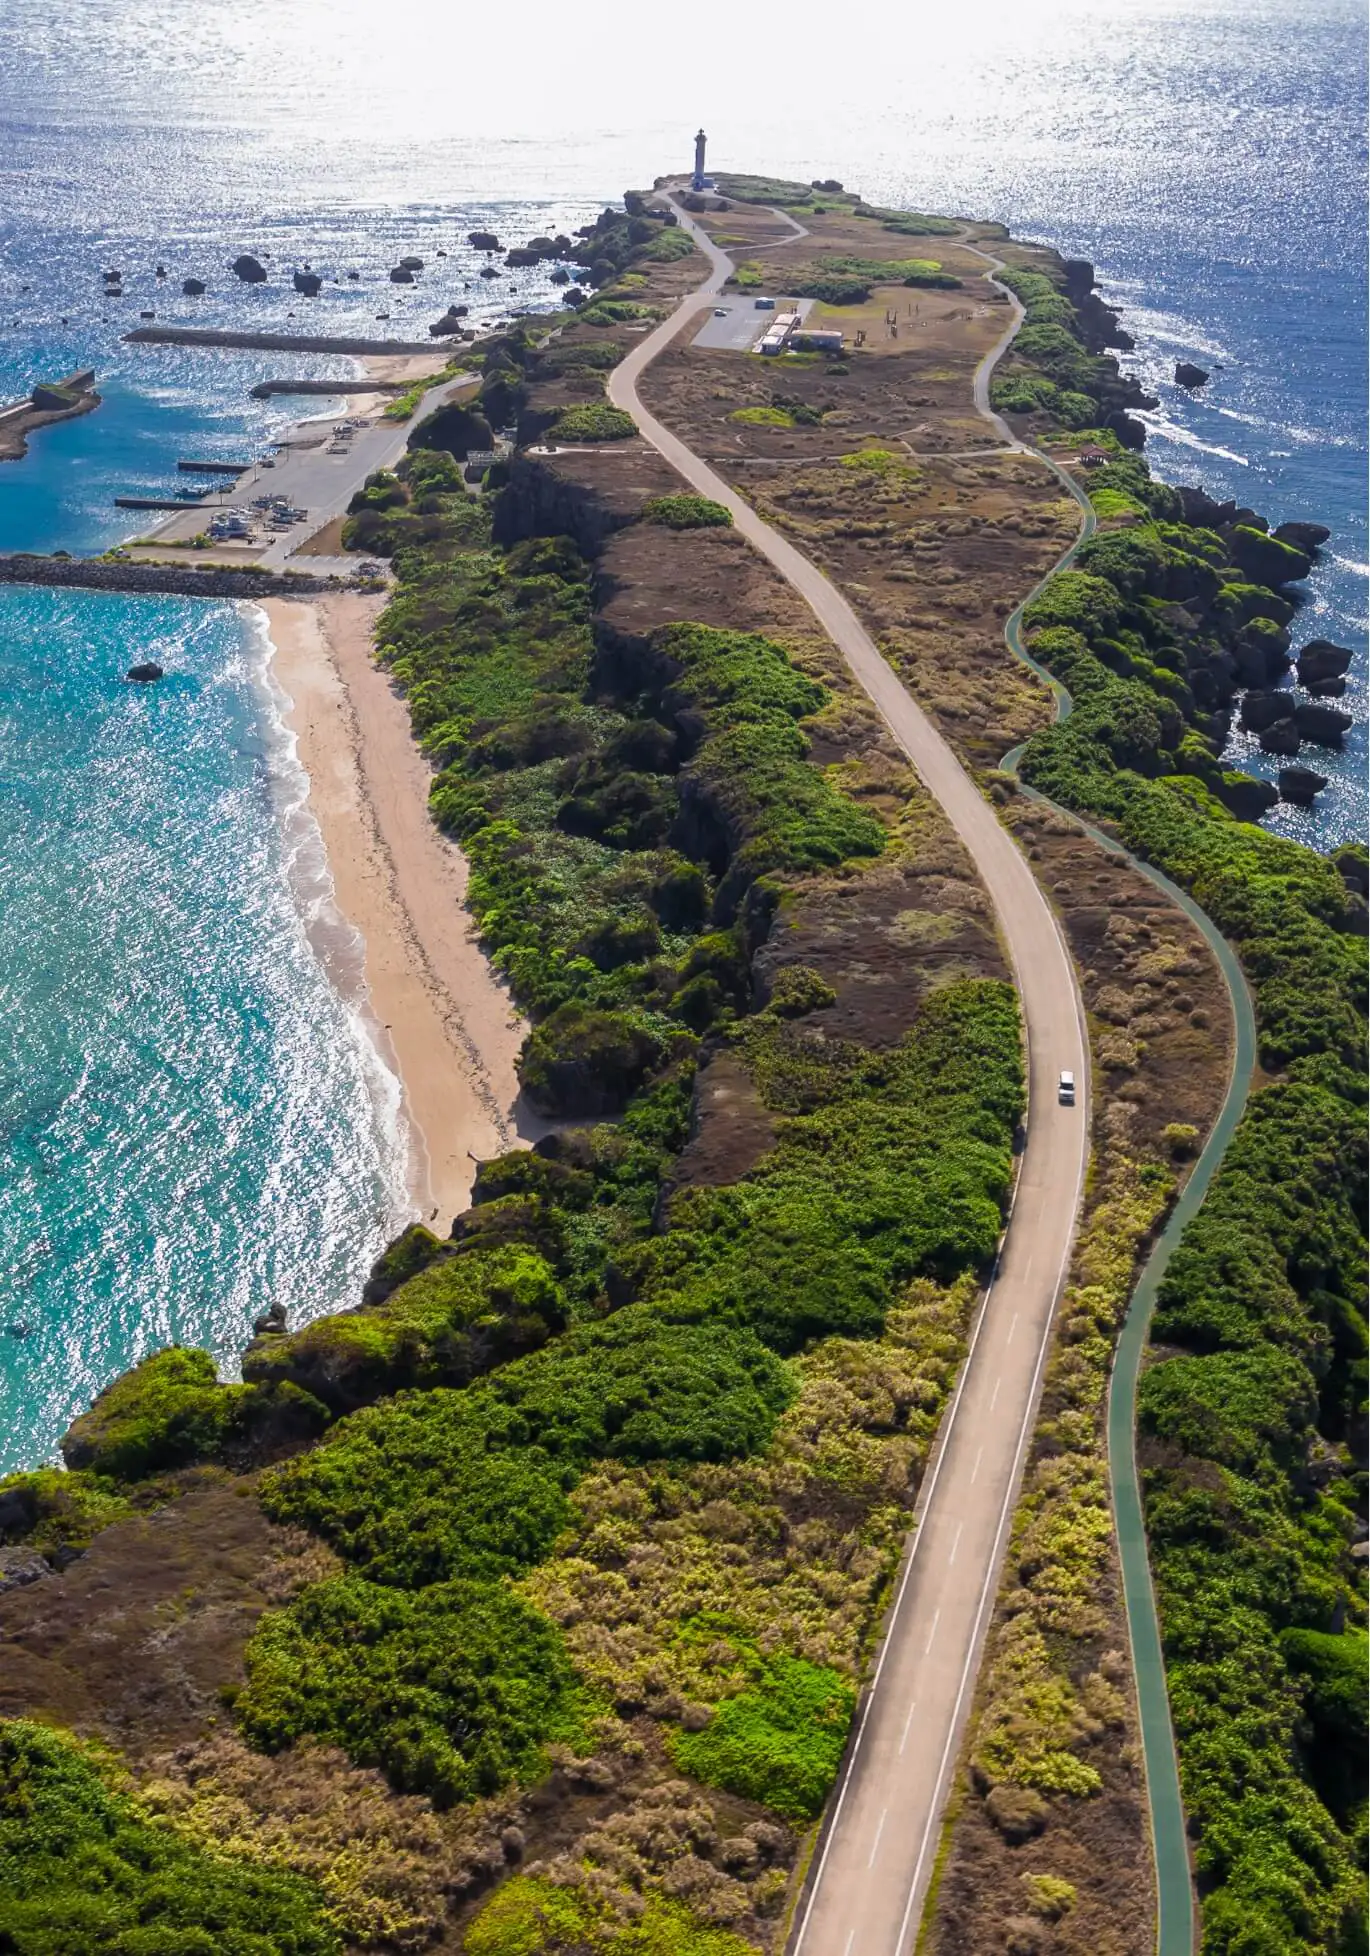 画像:海に囲まれた陸地で灯台へと続く道路を上空から撮影した様子